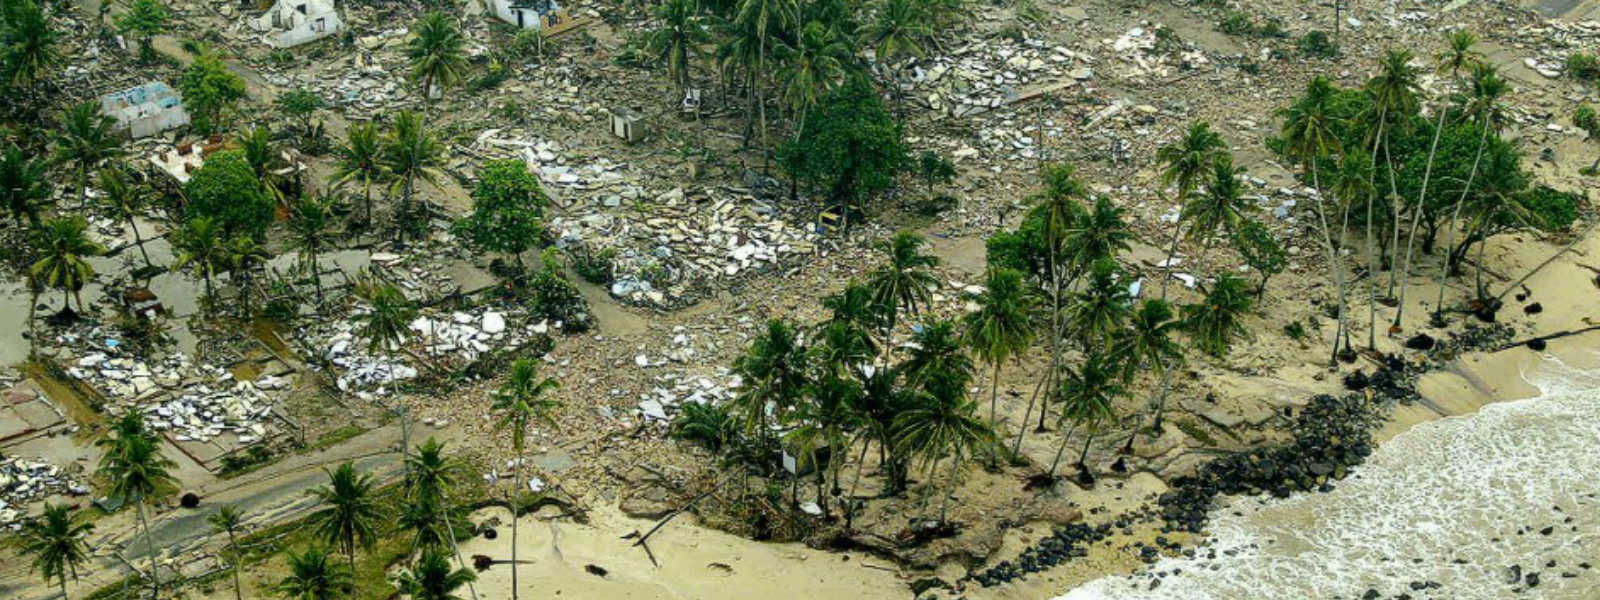  Sri Lanka 15 years after the Tsunami